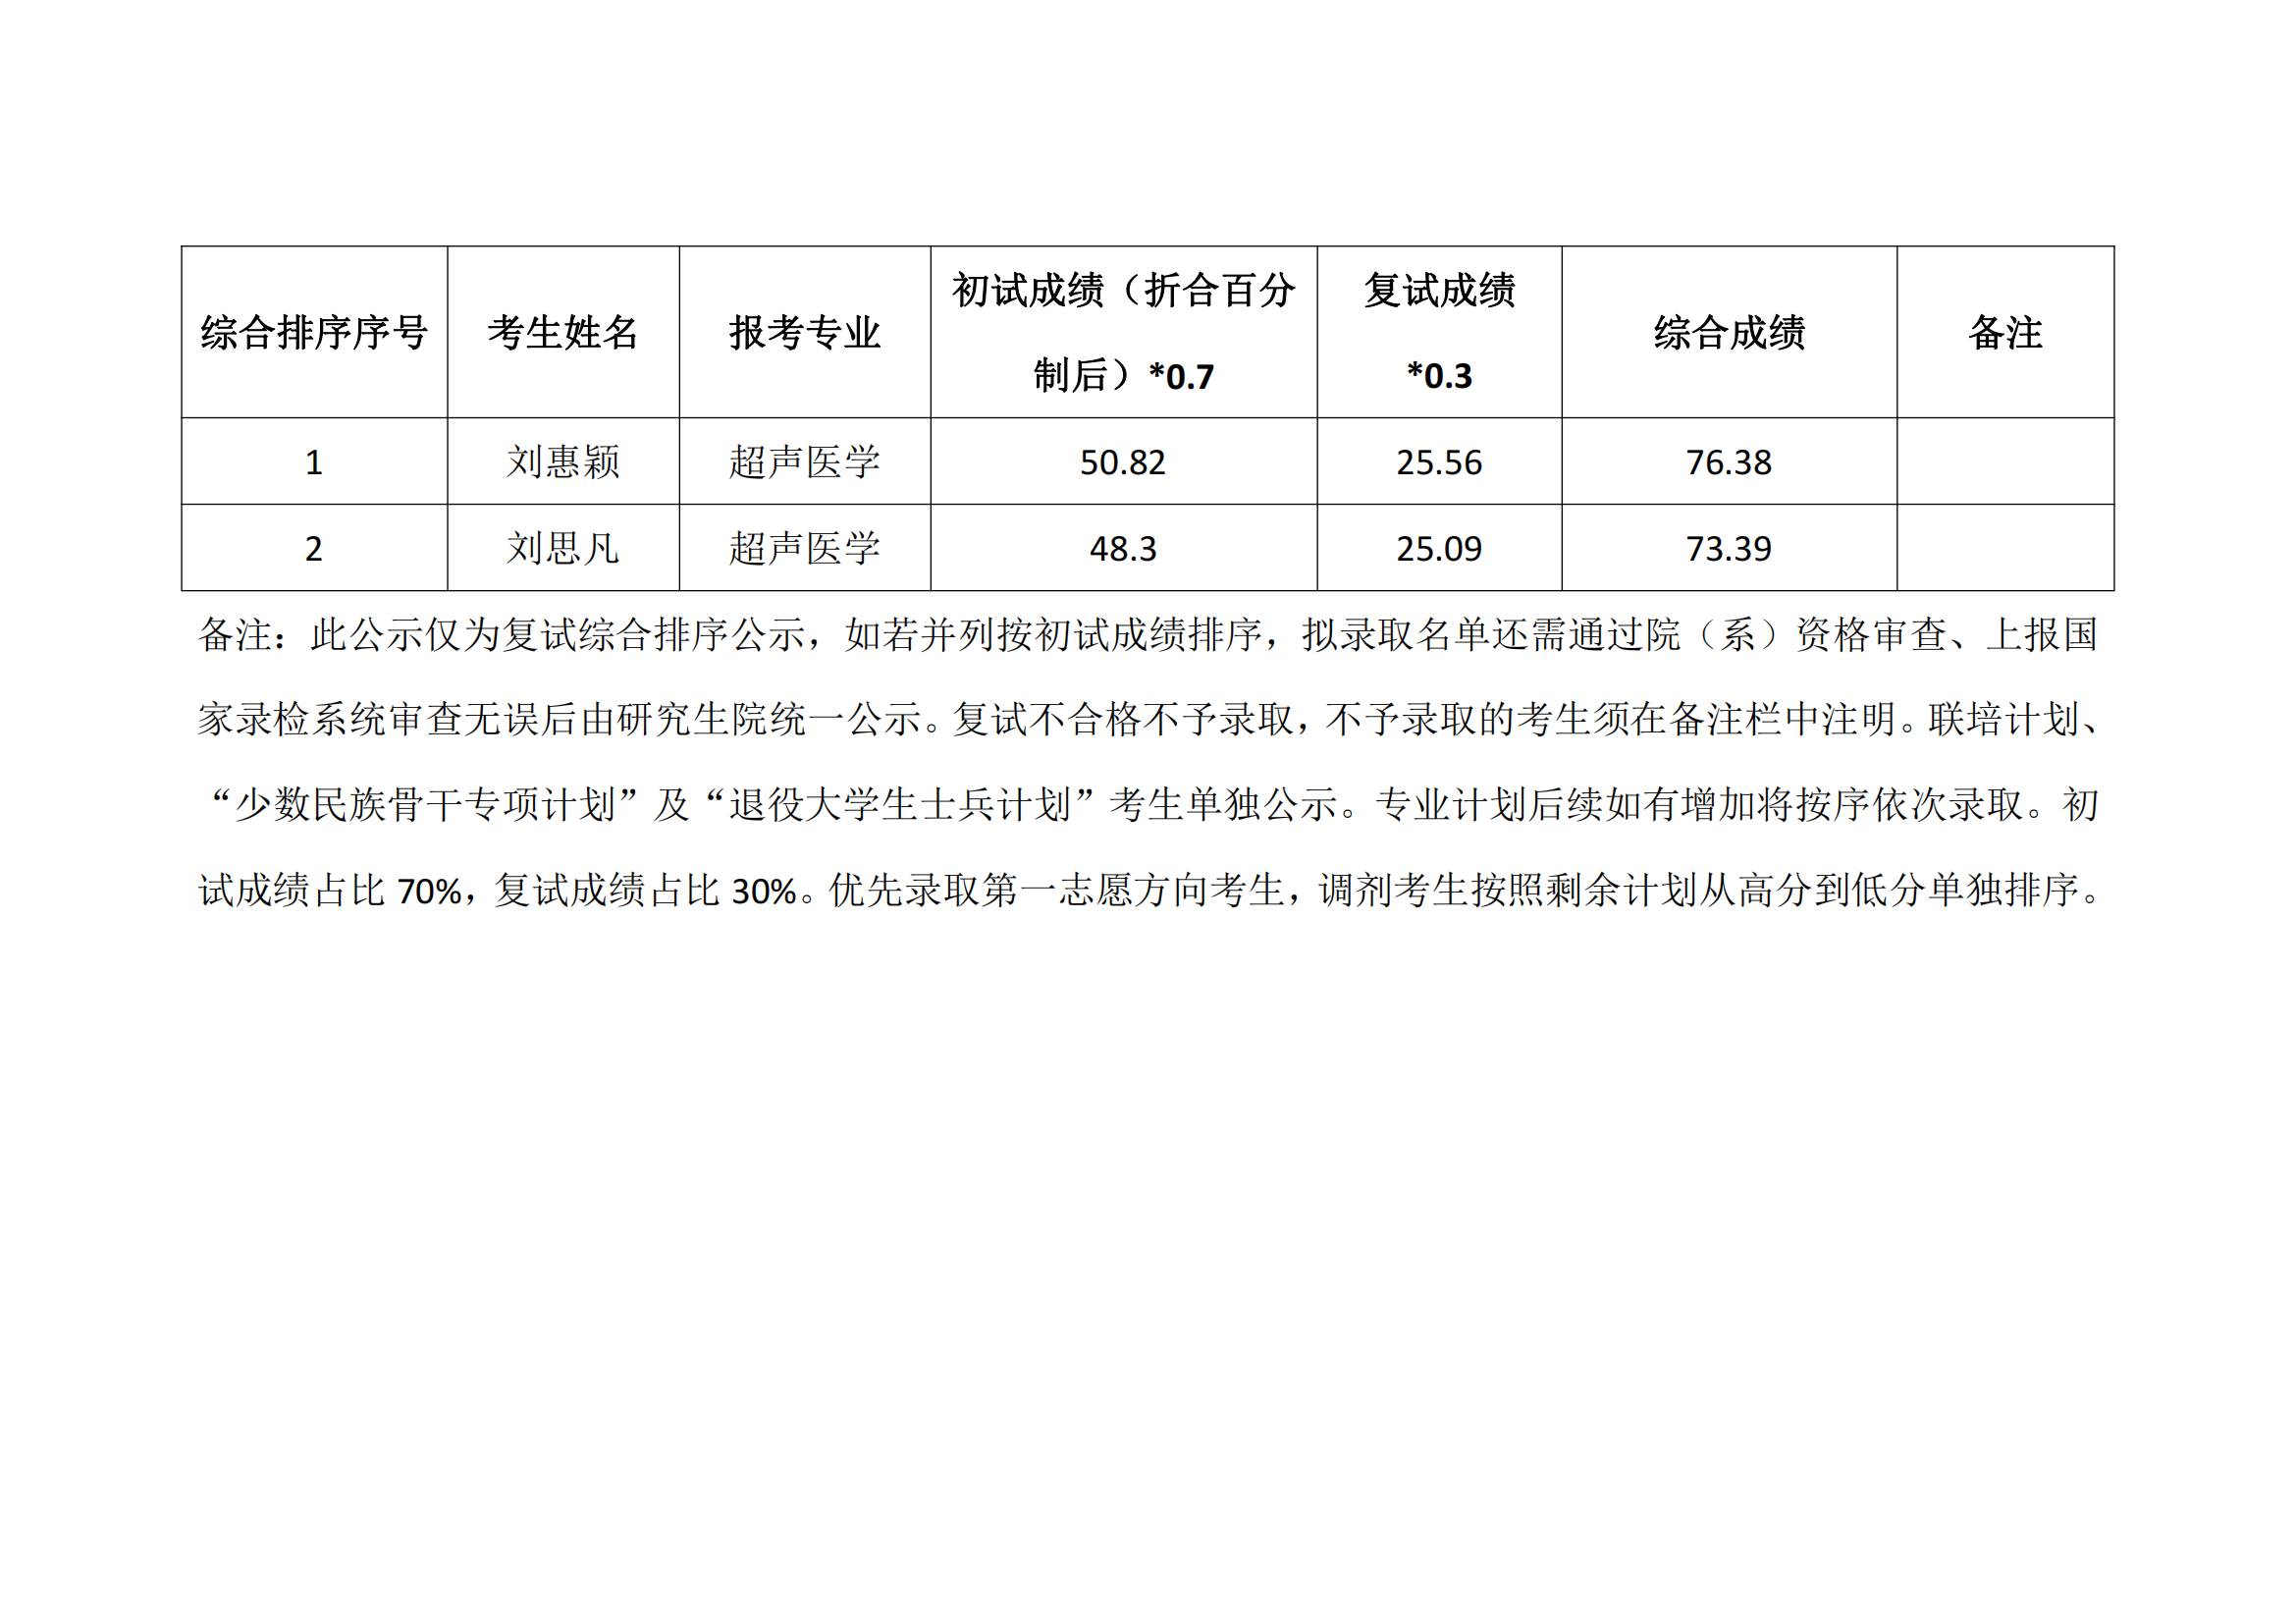 郑州大学华中阜外医院 2023年硕士研究生复试结果综合排序公示表_03.png